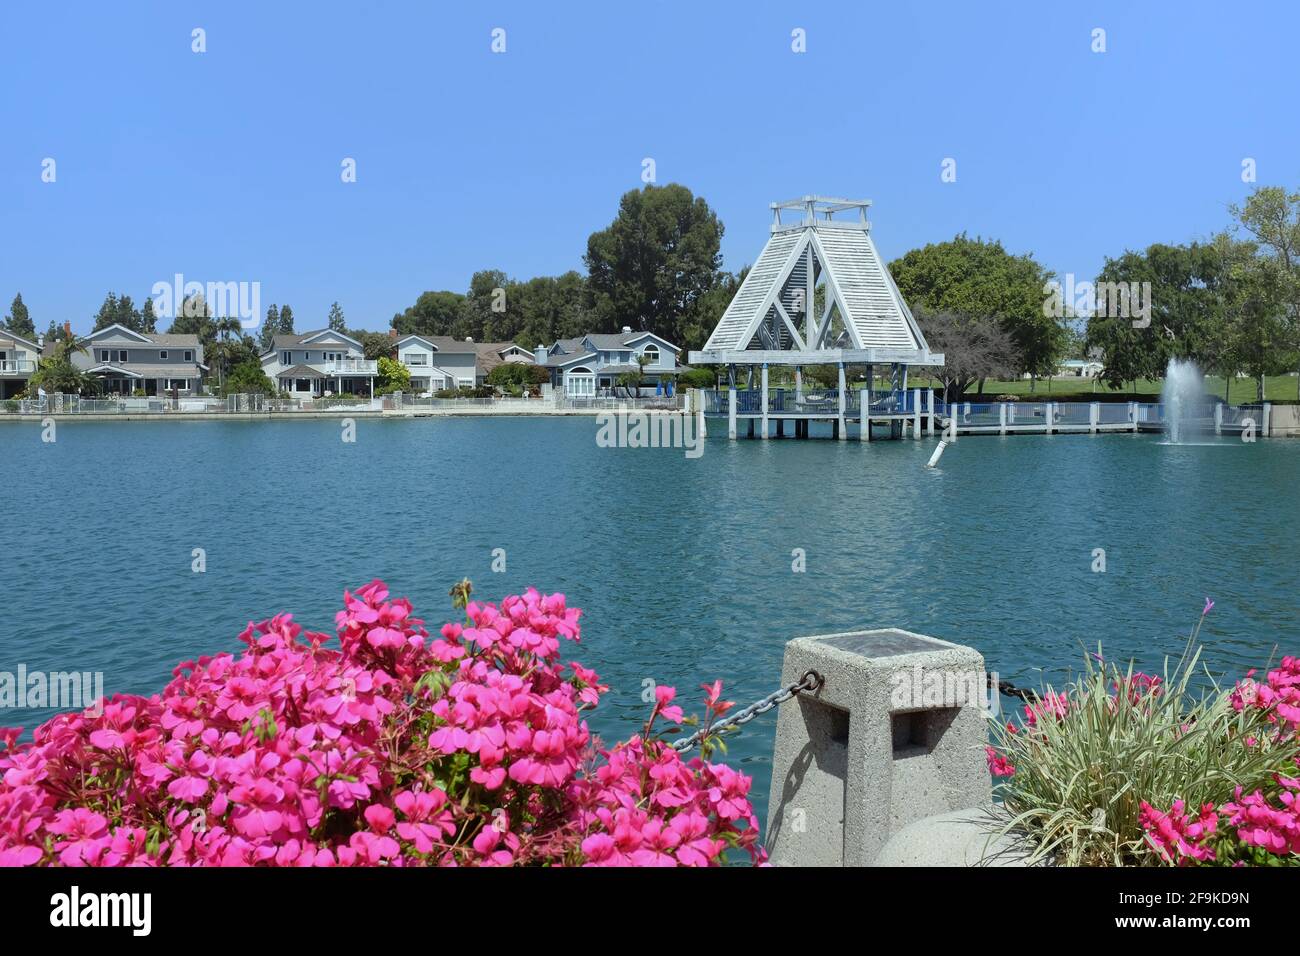 IRVINE, KALIFORNIEN - 16 APR 2021: Der Pavillon und Brunnen am South Lake im Woodbridge Village von Irvine. Stockfoto